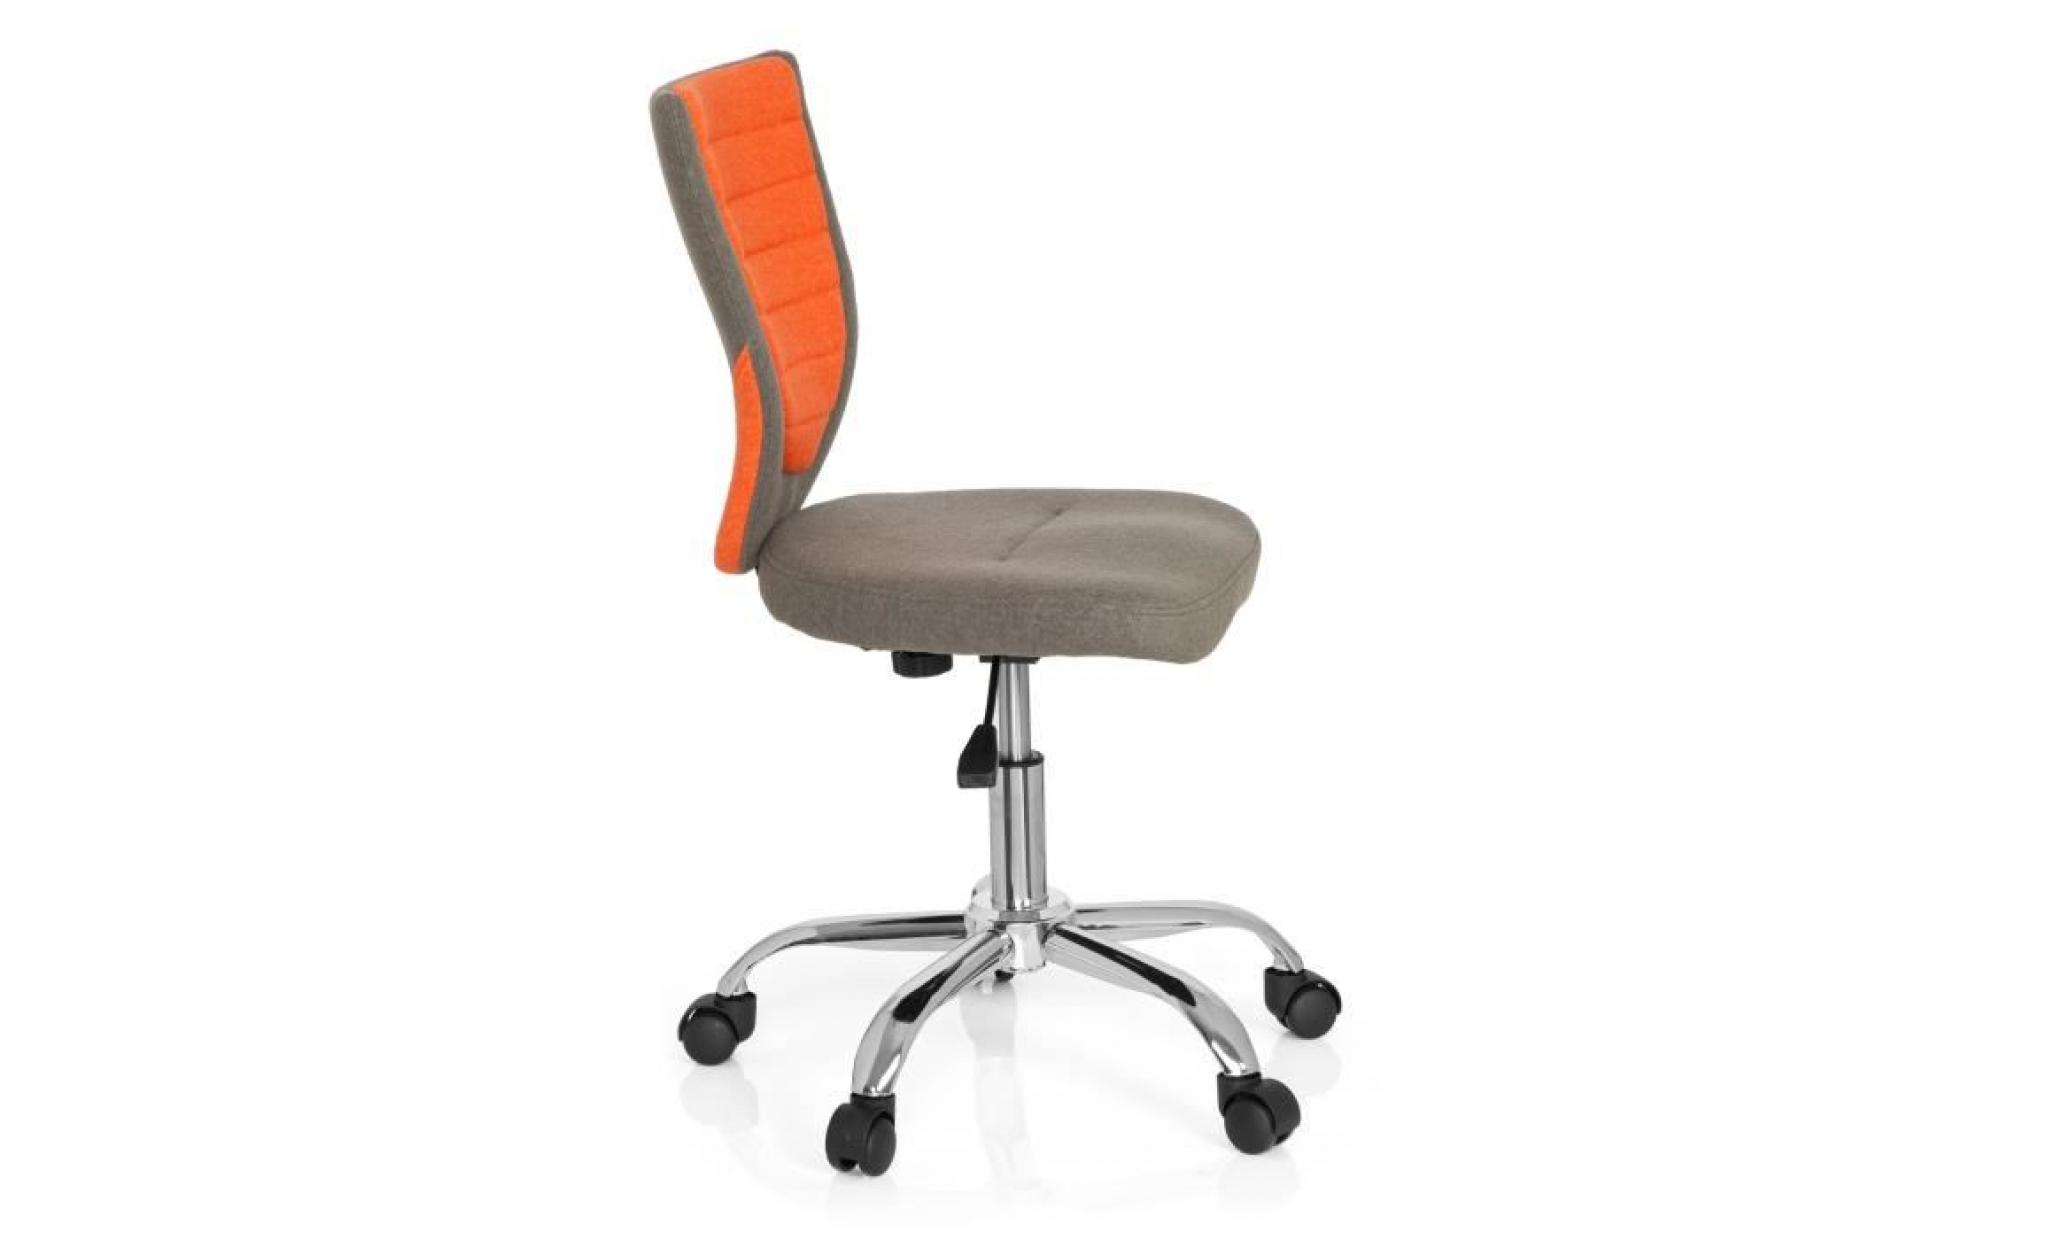 siège de bureau enfant / siège pivotant kiddy comfort tissu gris/orange hjh office pas cher